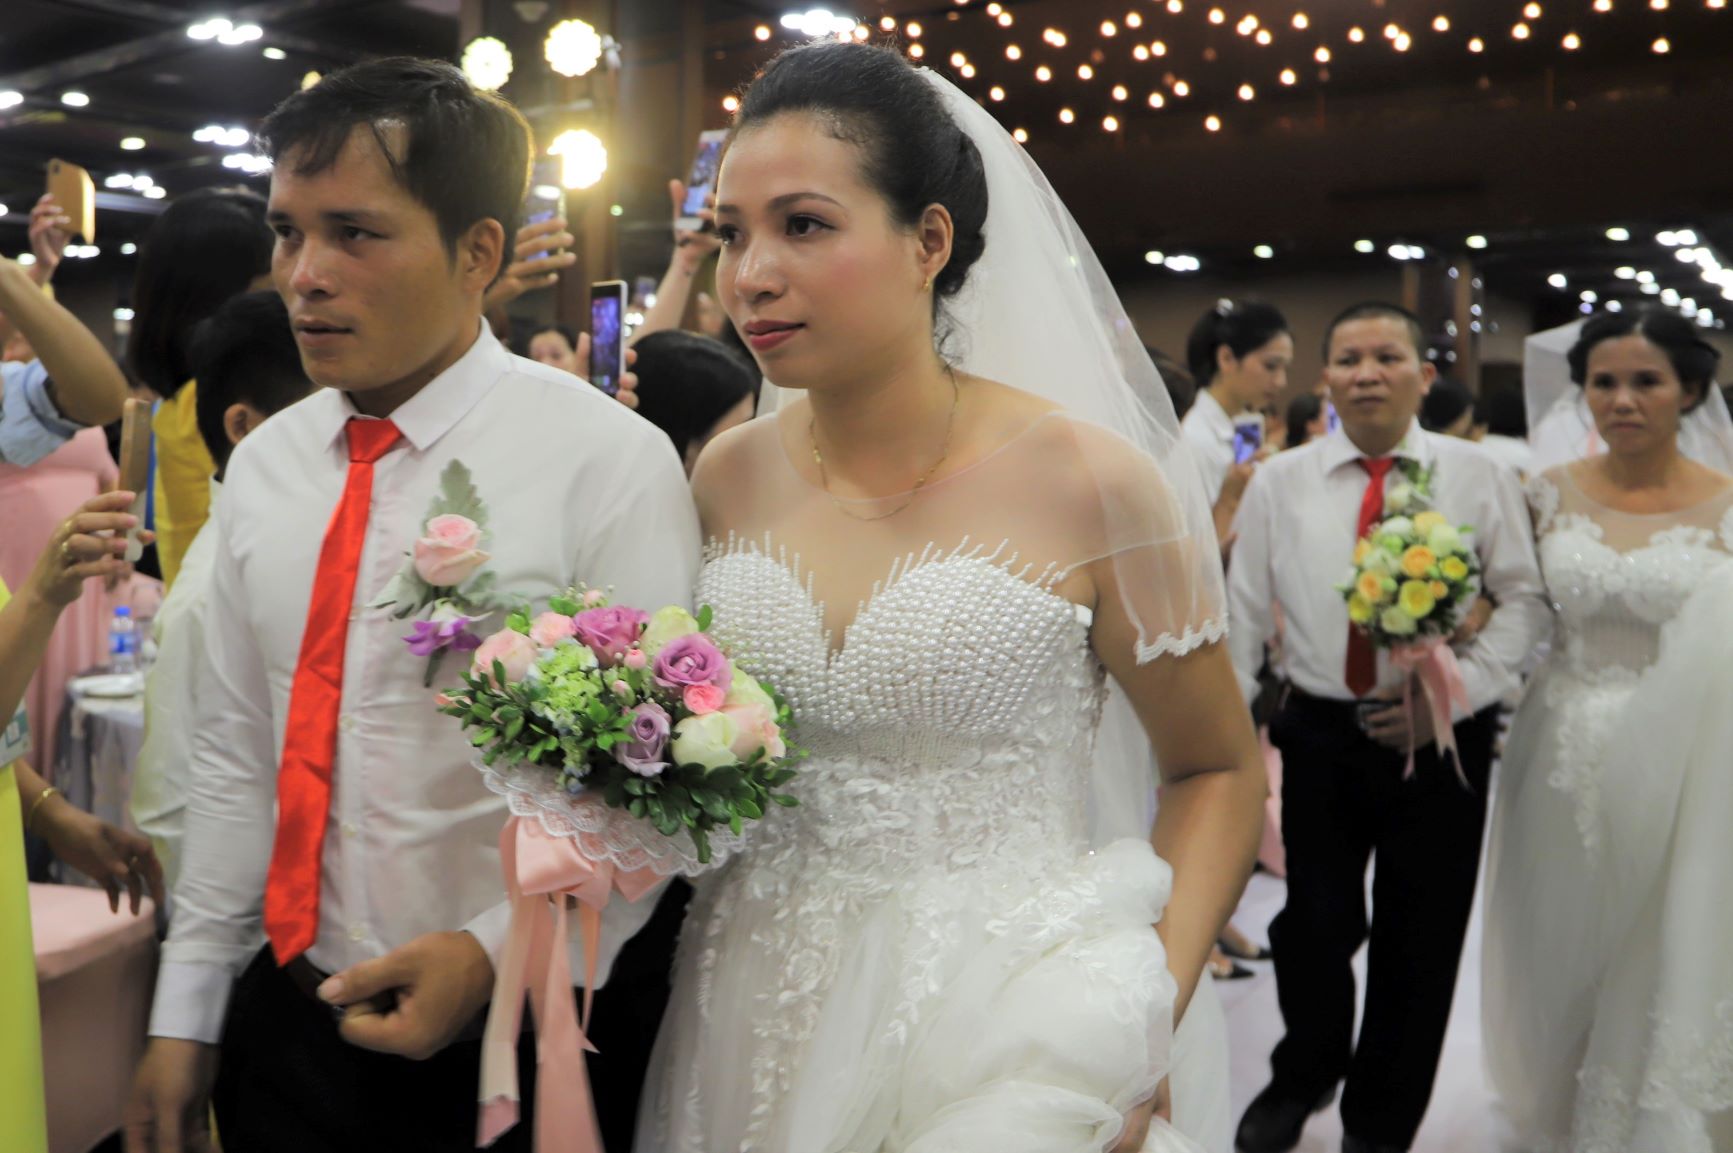 Ngay sau đó là lễ cưới, các cô dâu chú rể tay trong tay tiến vào lễ đường trong sự cổ vũ nồng nhiệt của người thân, bạn bè.